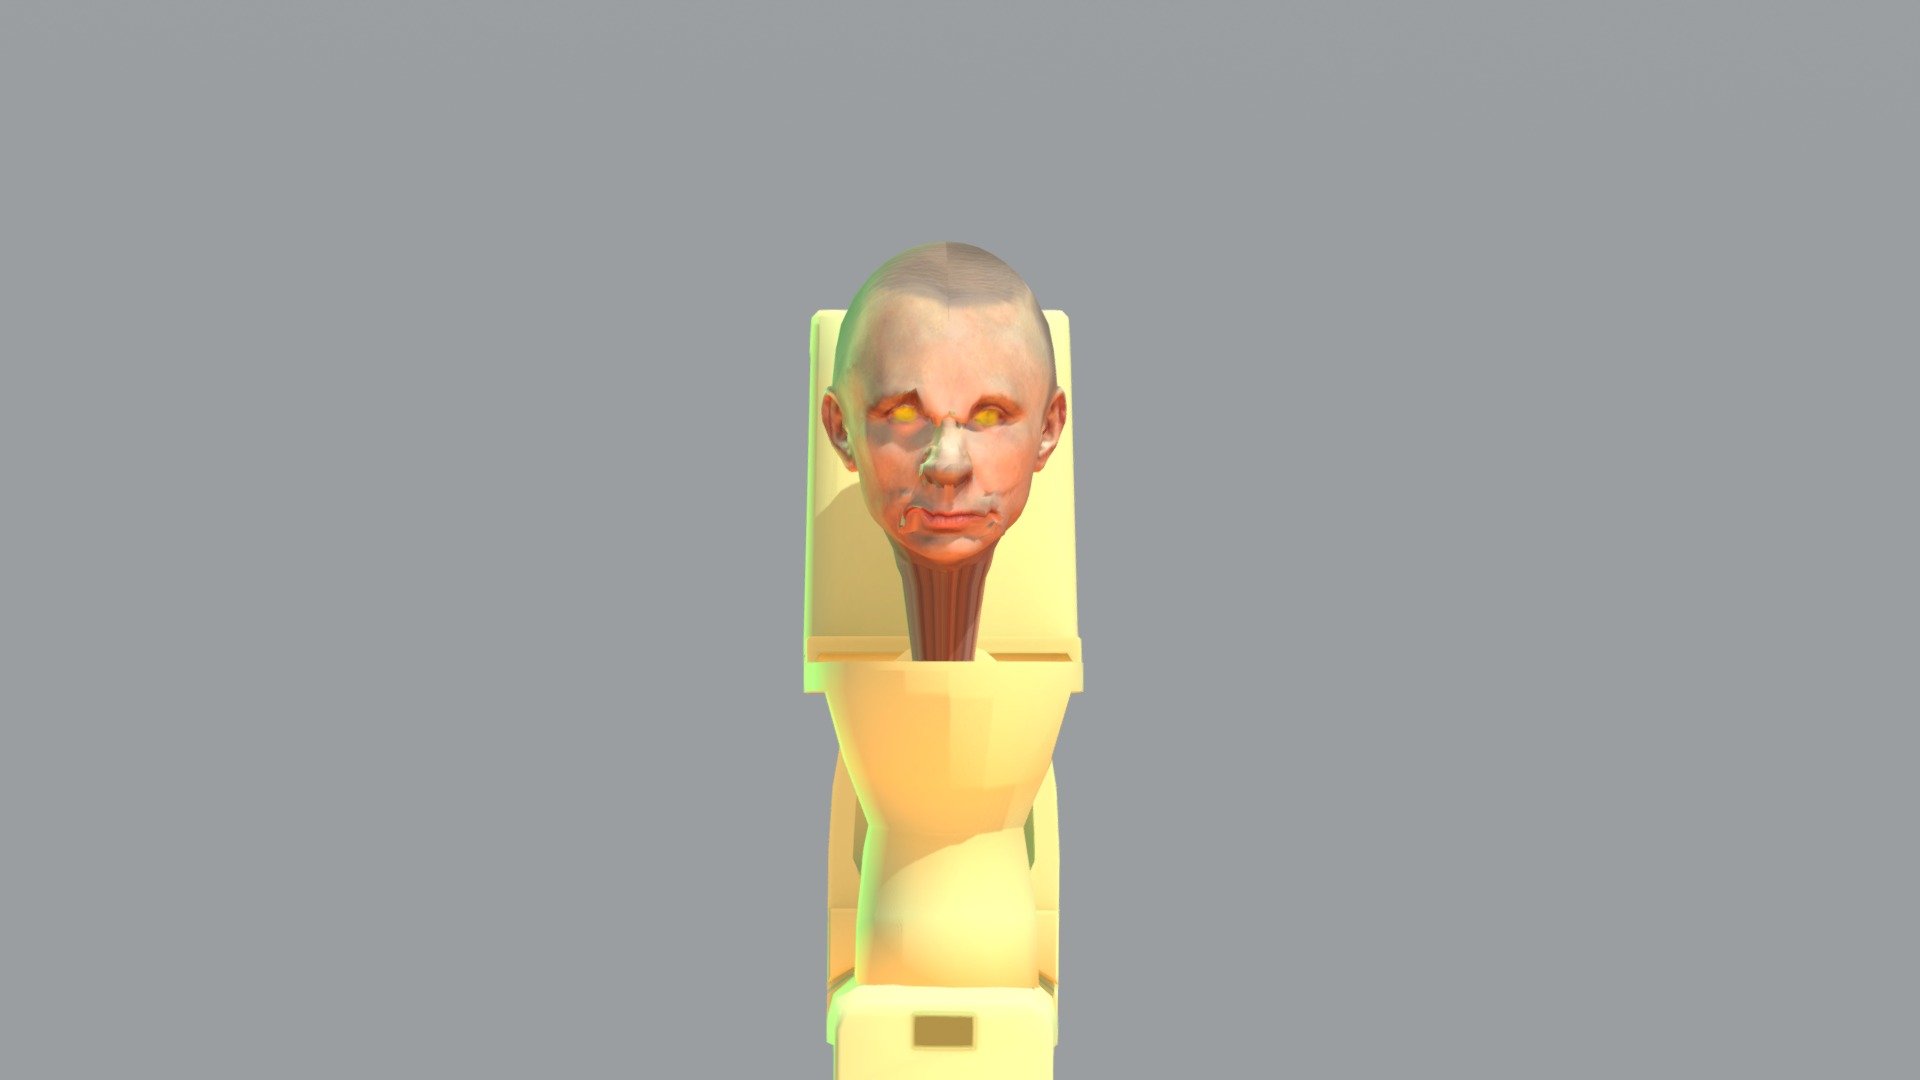 PUTIN SKIBIDI TOILET - Download Free 3D model by pamm (@daeboommmm) 3d model